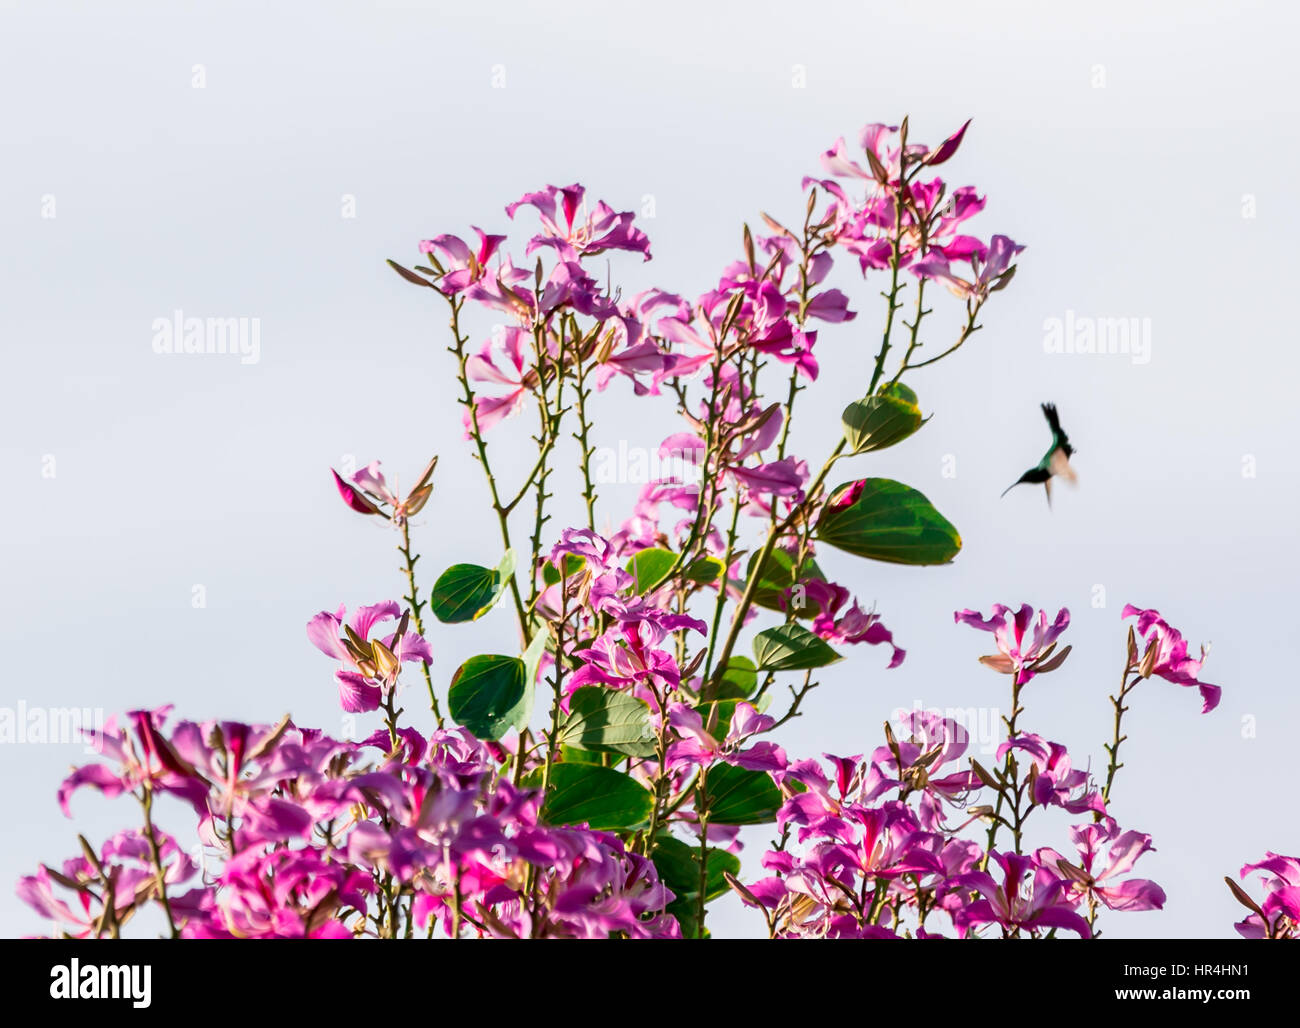 El colibrí acercándose a un árbol lleno de flores en Gustavia St Bart's Foto de stock